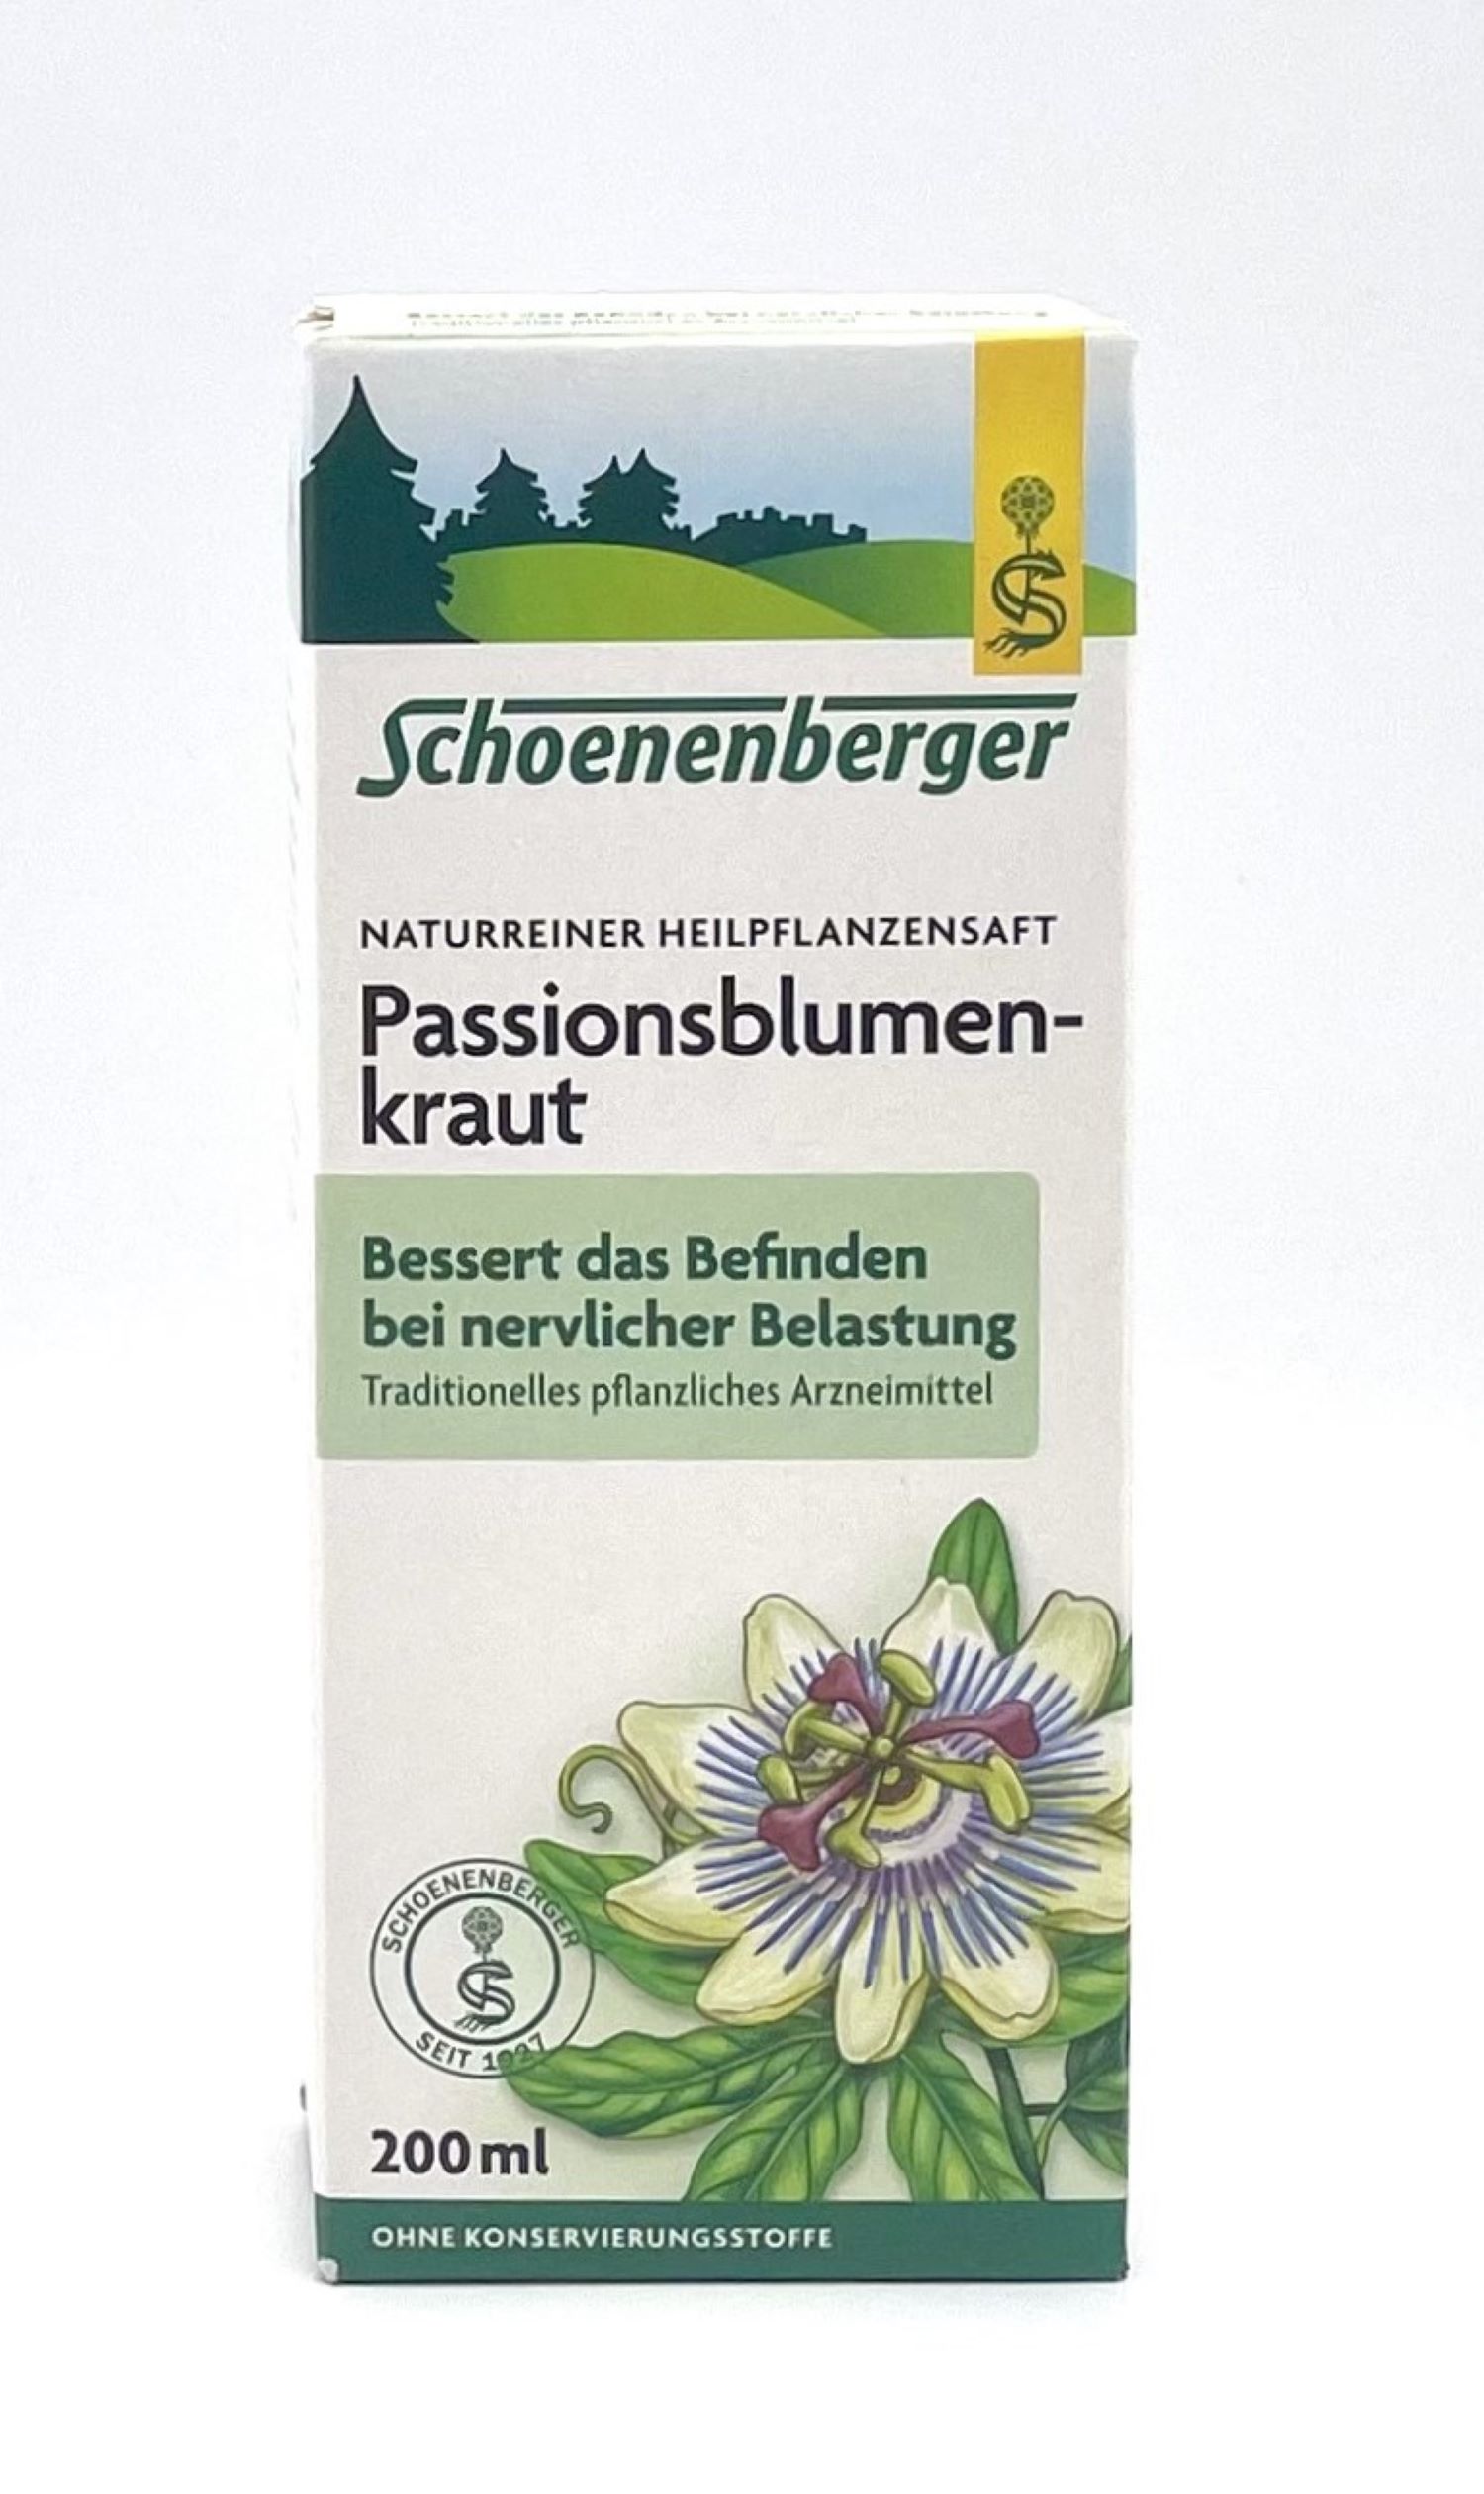 Schoenenberger Passionsblumenkraut Naturreiner Heilpflanzensaft  200ml